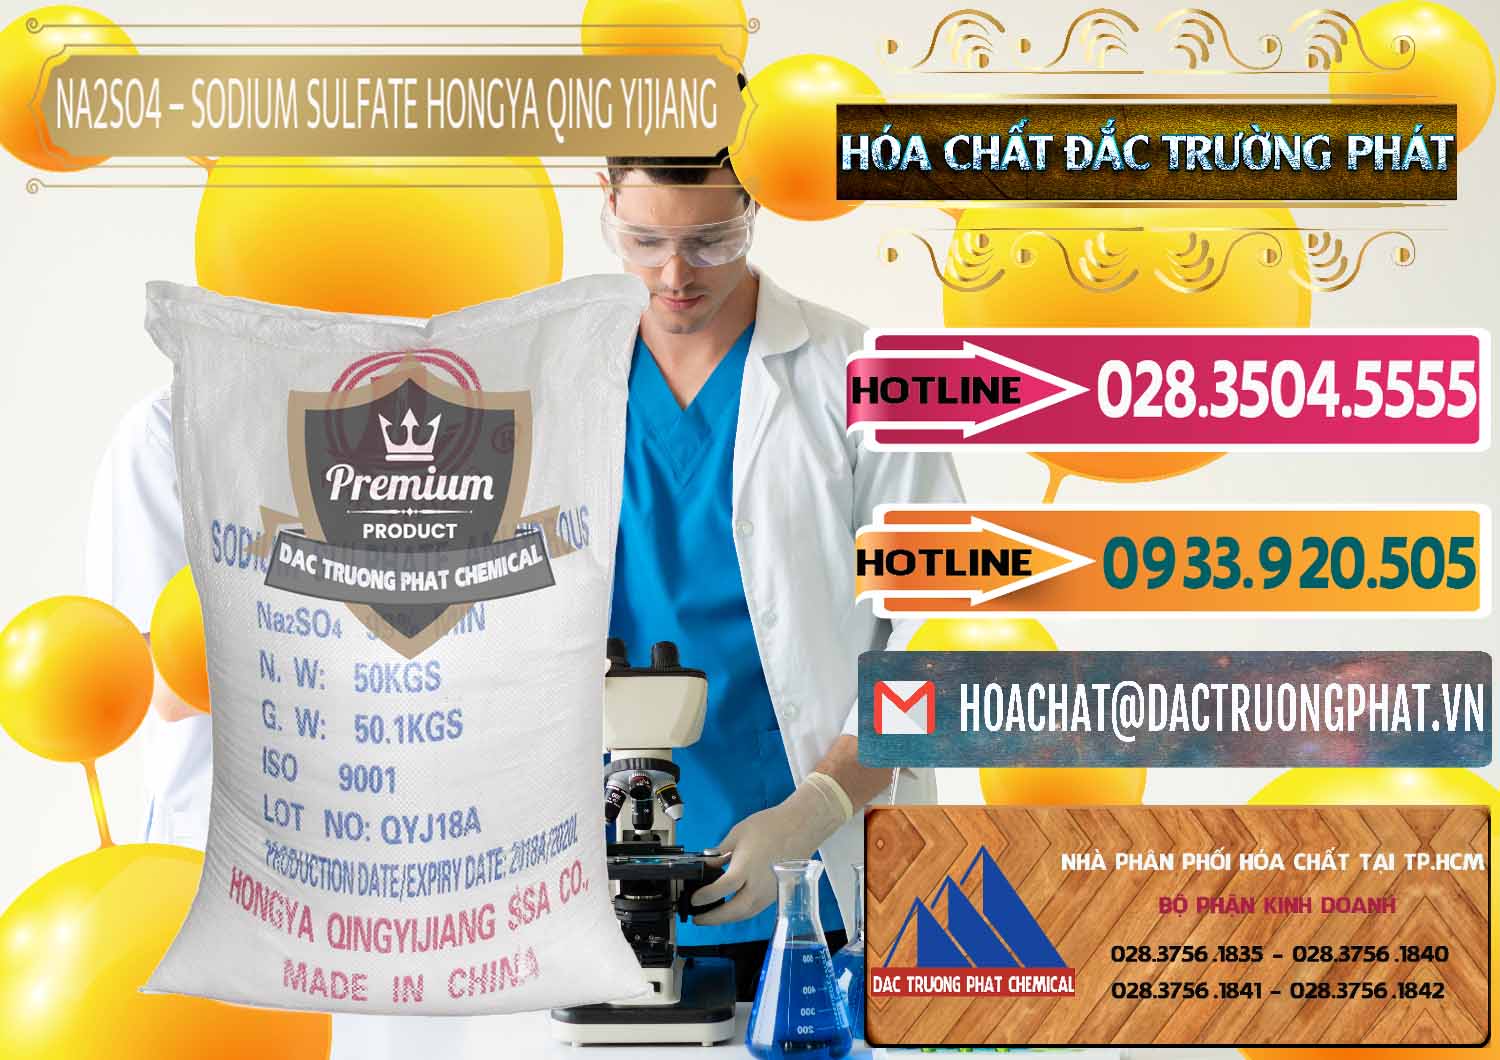 Cty chuyên kinh doanh và bán Sodium Sulphate - Muối Sunfat Na2SO4 Logo Cánh Bườm Hongya Qing Yi Trung Quốc China - 0098 - Đơn vị chuyên cung cấp và nhập khẩu hóa chất tại TP.HCM - dactruongphat.vn